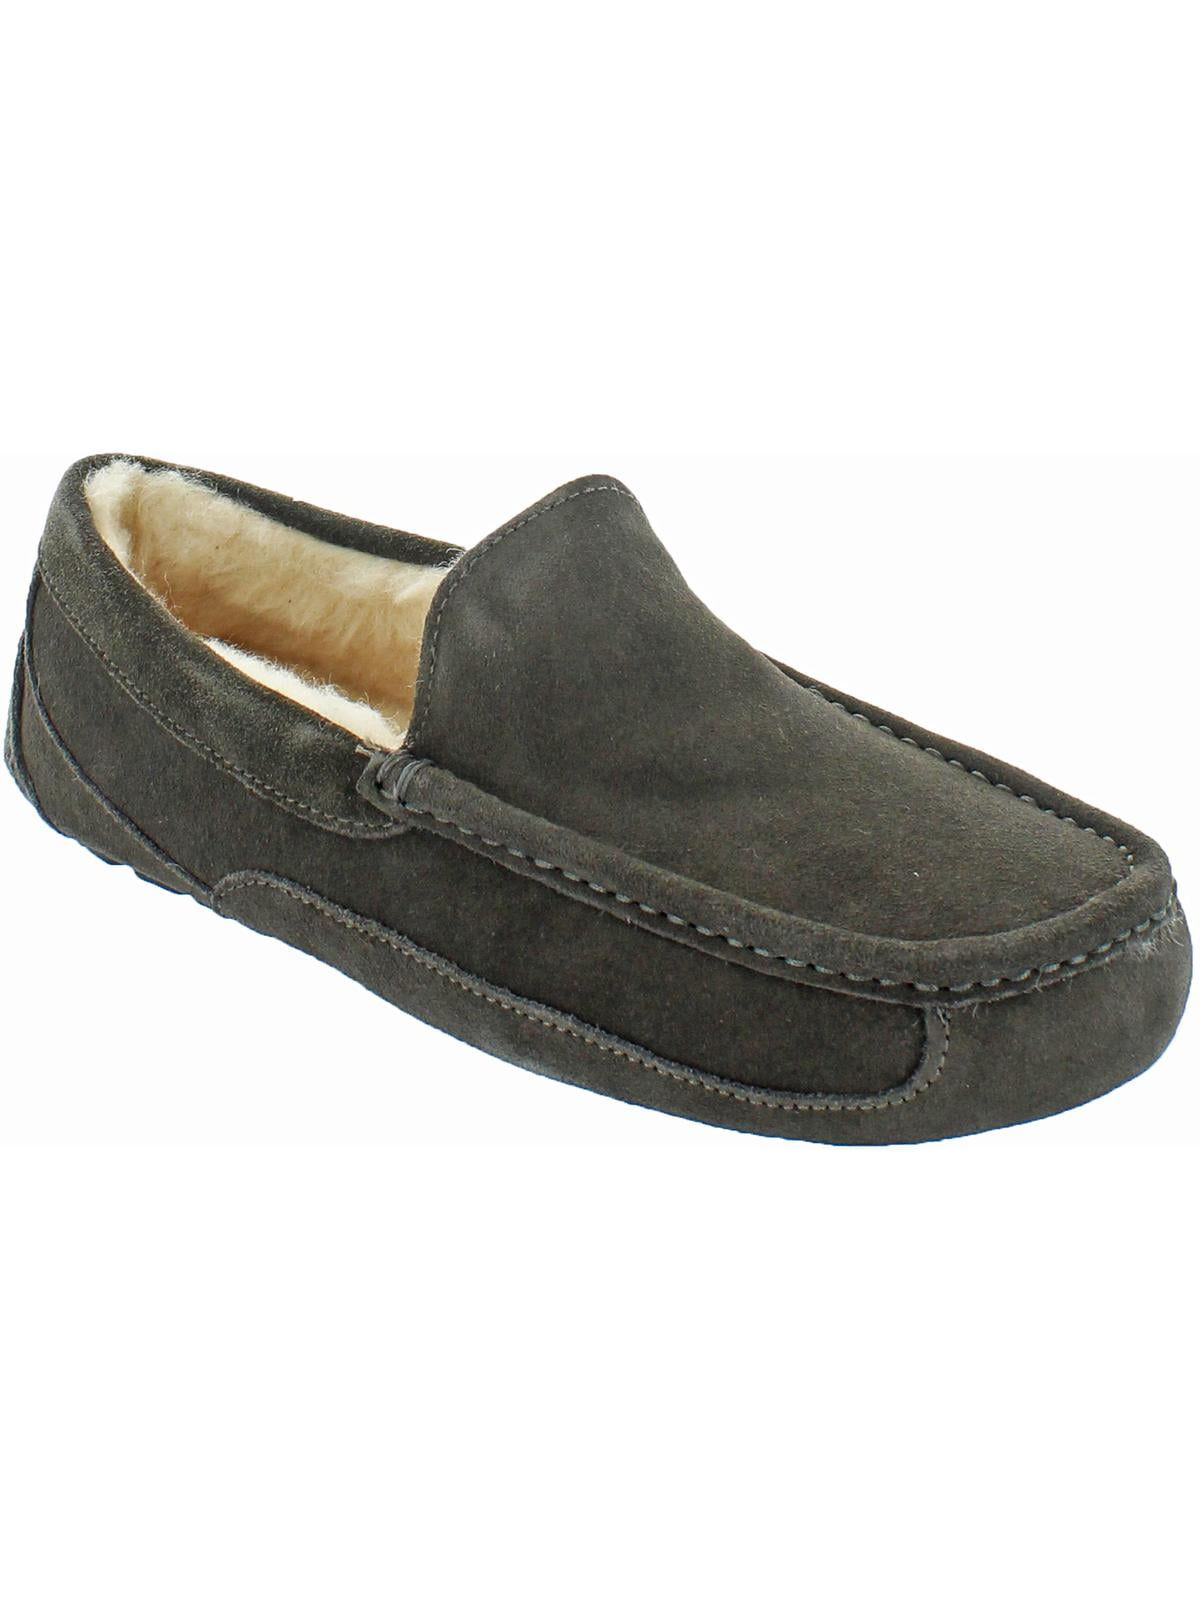 UGG - Ugg Men's Ascot Suede Wool Slip On Loafer Slipper Grey Size 16